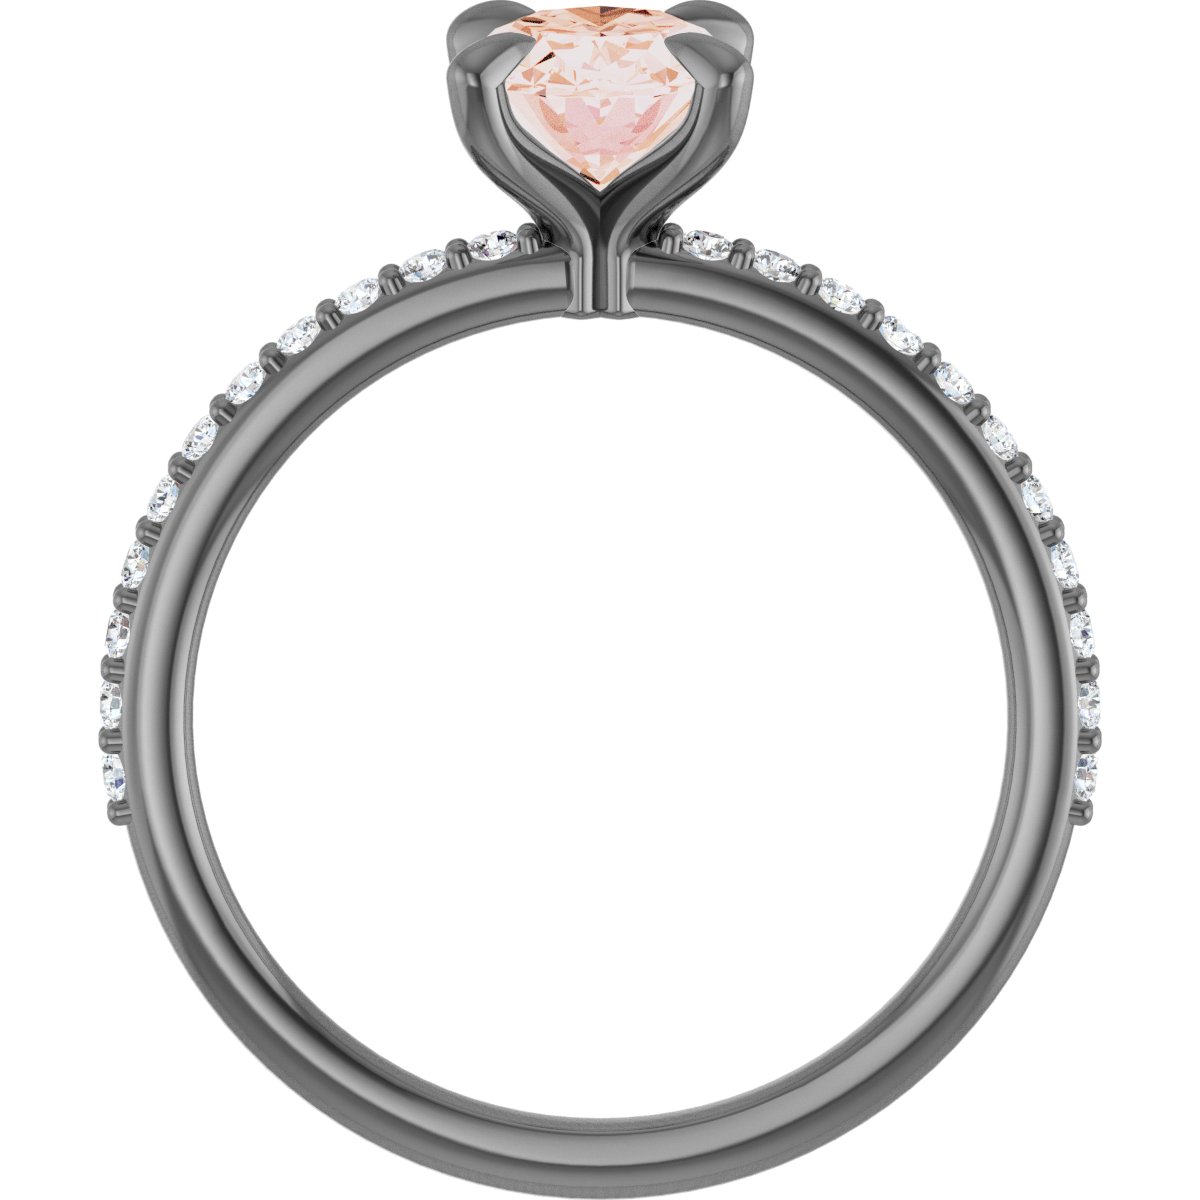 14K Rose 8x6 mm Oval Forever One™ Moissanite & 1/5 CTW Diamond Engagement Ring